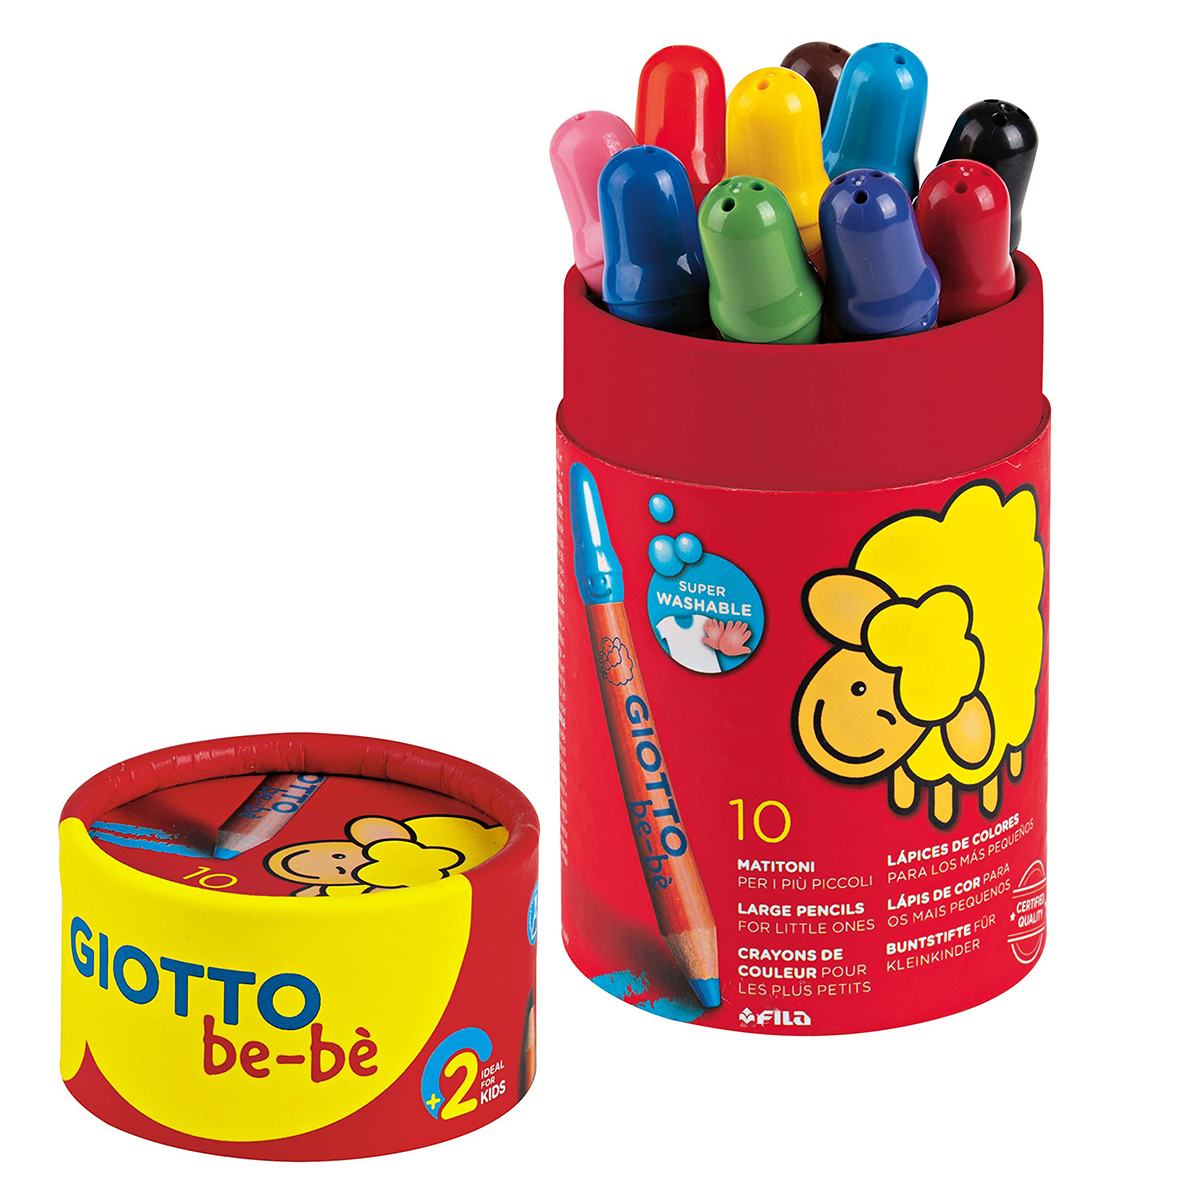 Crayons de couleur Giotto - A partir de 2 ans - Crayons de couleur